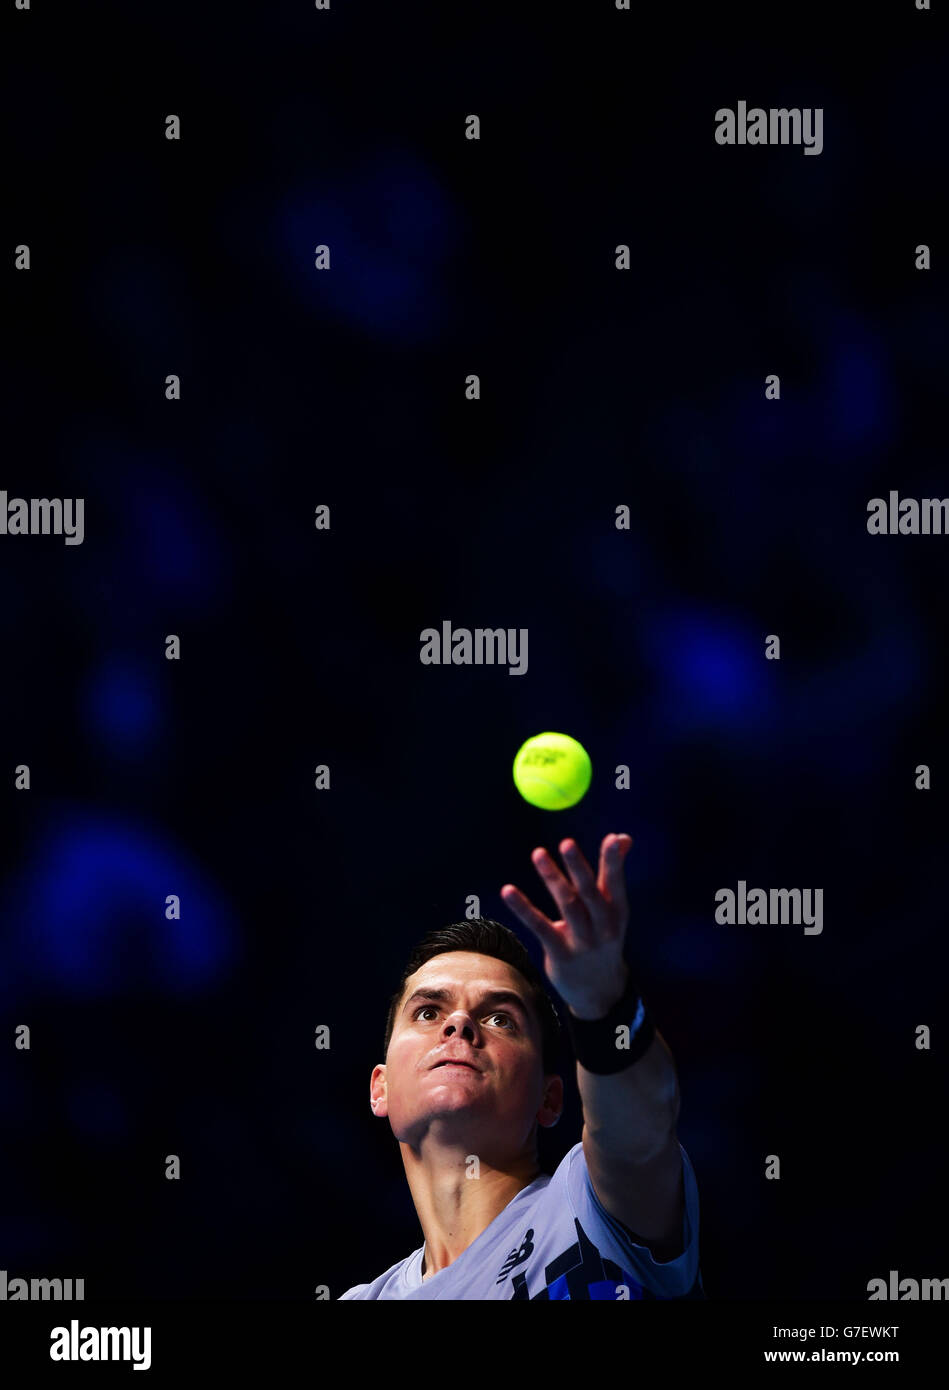 Milos Raonic du Canada pendant les finales du Barclays ATP World Tour à l'O2 Arena, Londres. APPUYEZ SUR ASSOCIATION photo. Date de la photo: Mardi 11 novembre 2014. Voir PA Story TENNIS Londres. Le crédit photo doit indiquer Adam Davy/PA Wire. Banque D'Images